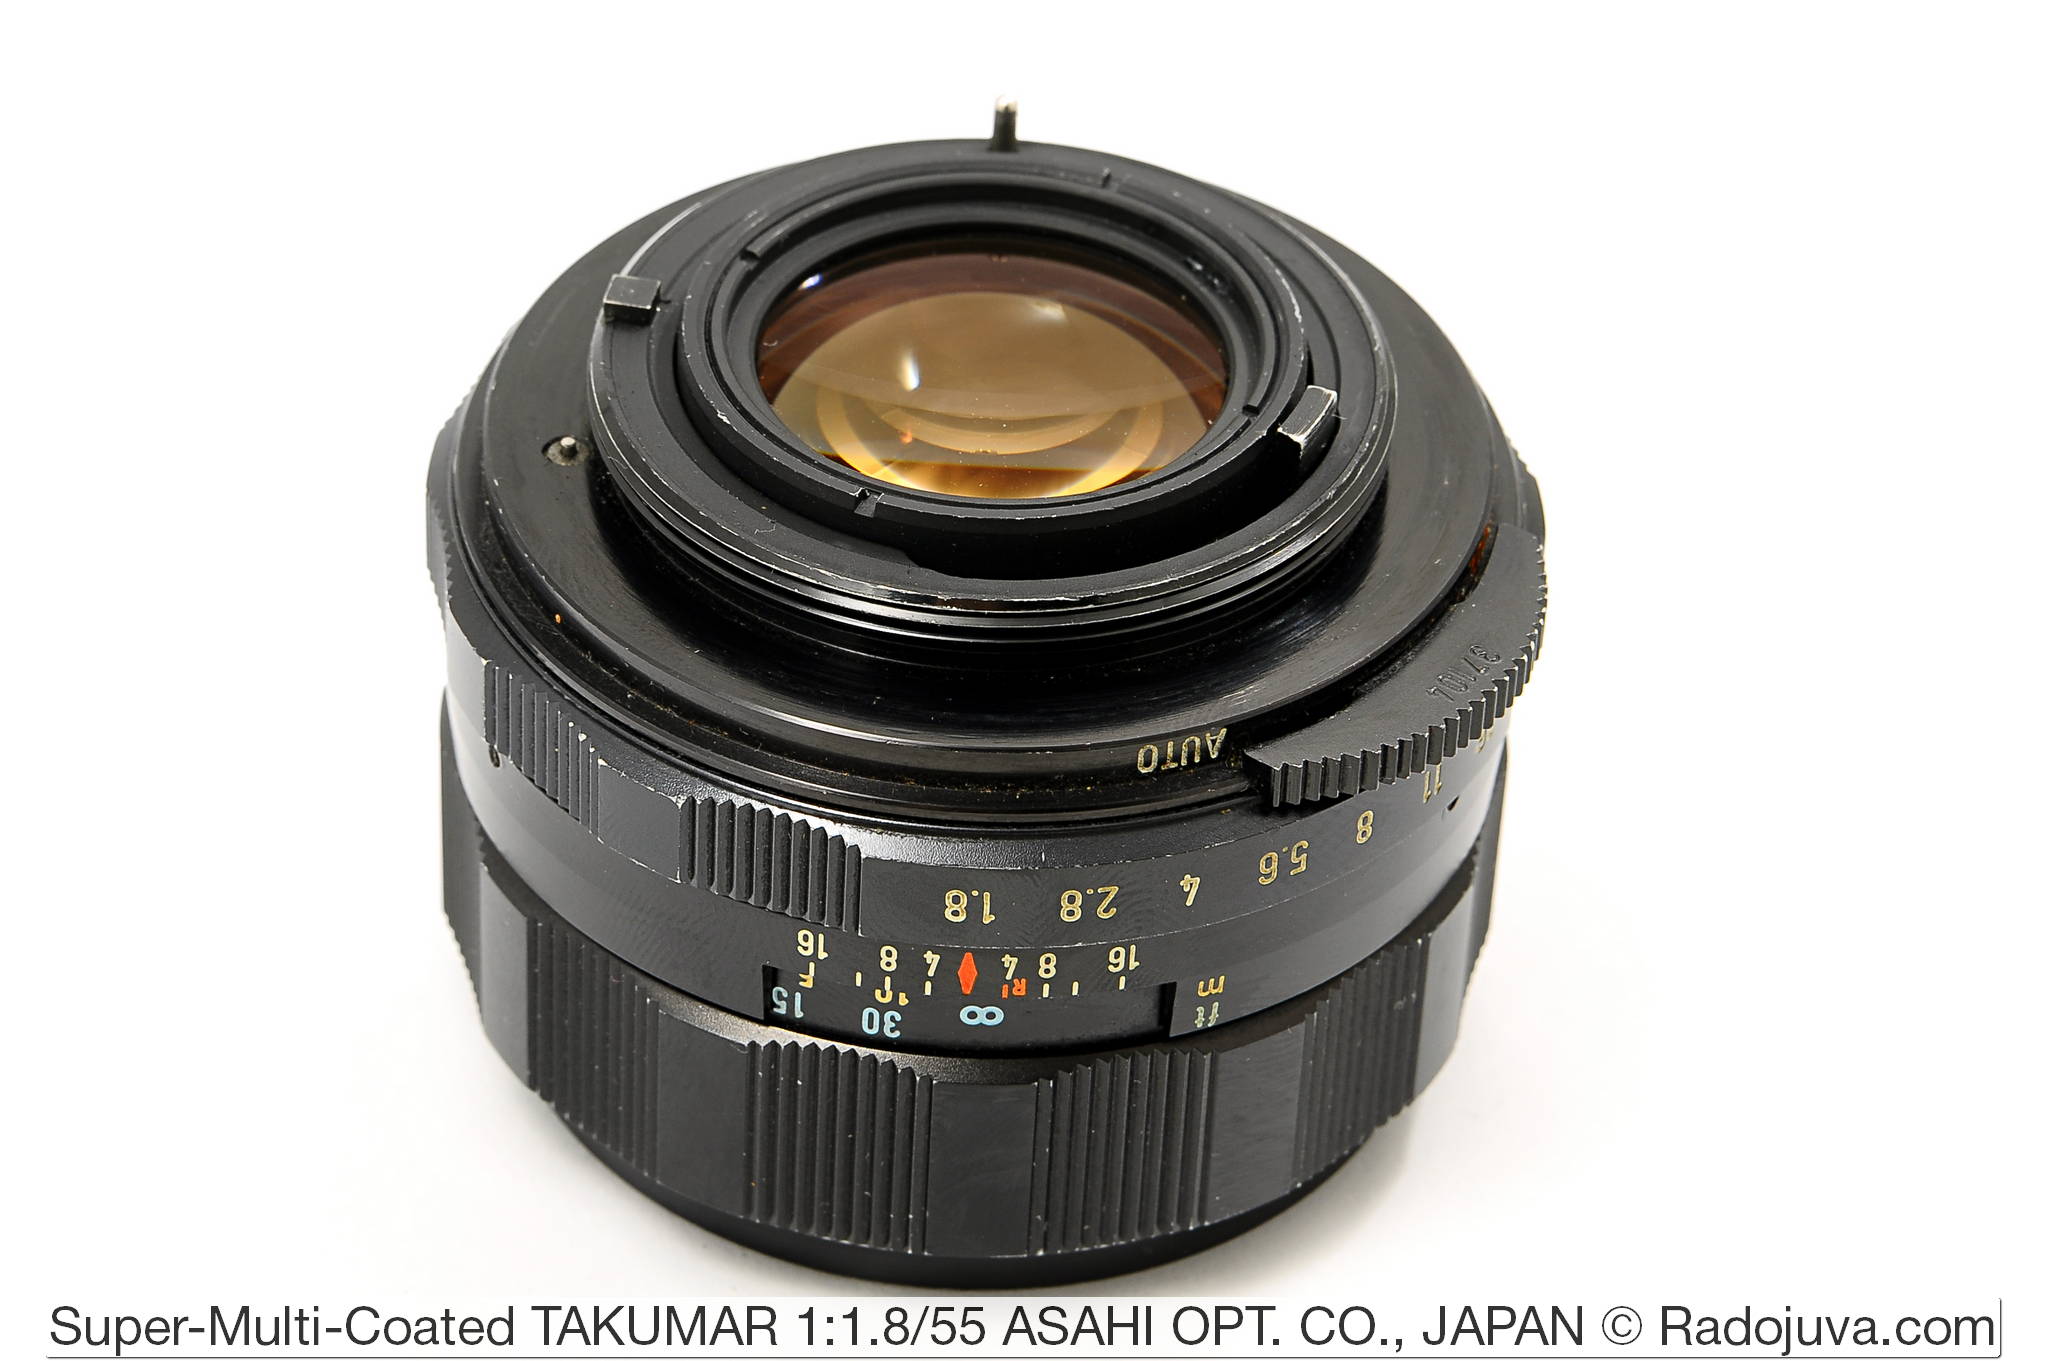 Super-Multi-Coated TAKUMAR 1:1.8/55 ASAHI OPT. CO., JAPAN